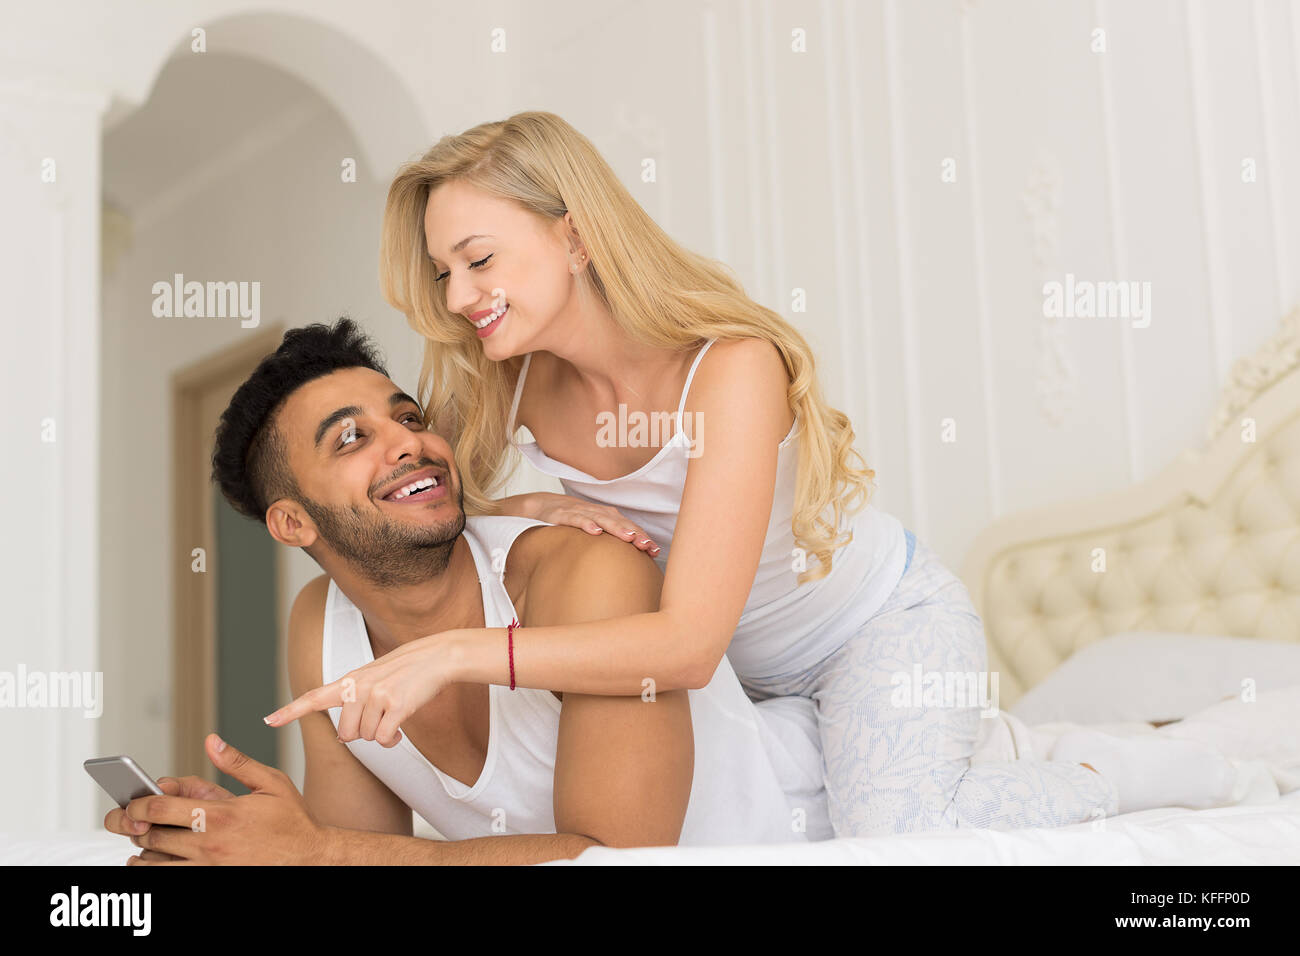 Junges Paar im Bett liegt, glückliches Lächeln Hispanic Mann und mittels smart phone Frau Stockfoto